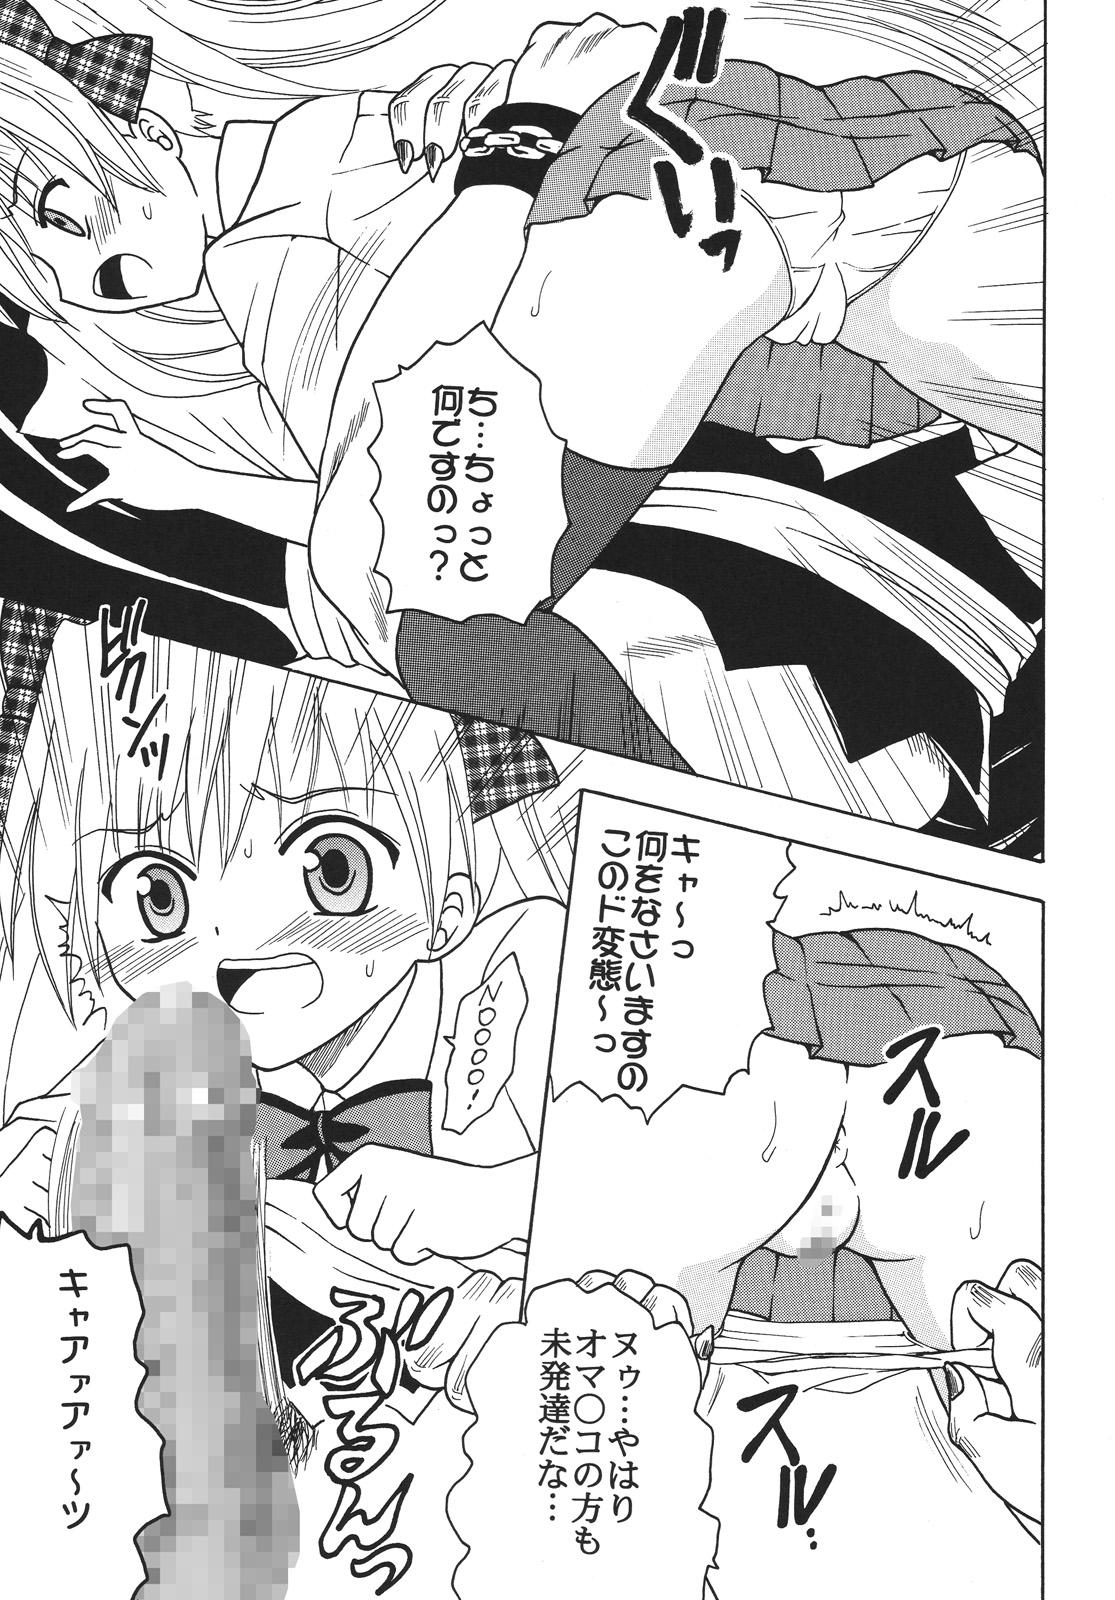 Black Girl Nakadashi Maid no Hinkaku 3 - Kamen no maid guy 8teenxxx - Page 6